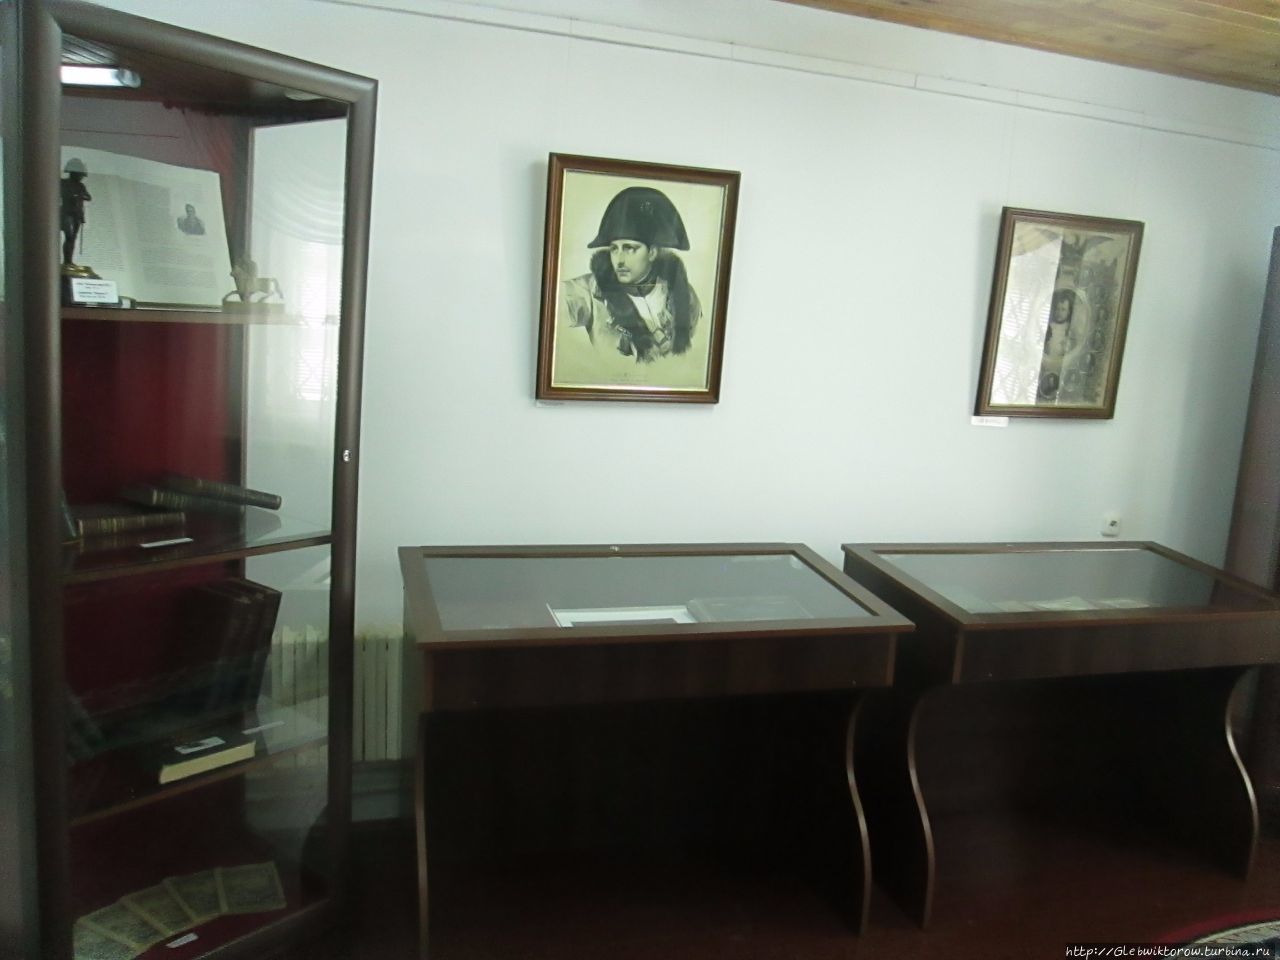 Музей войны 1812 в штаб-квартире армии П.Багратиона